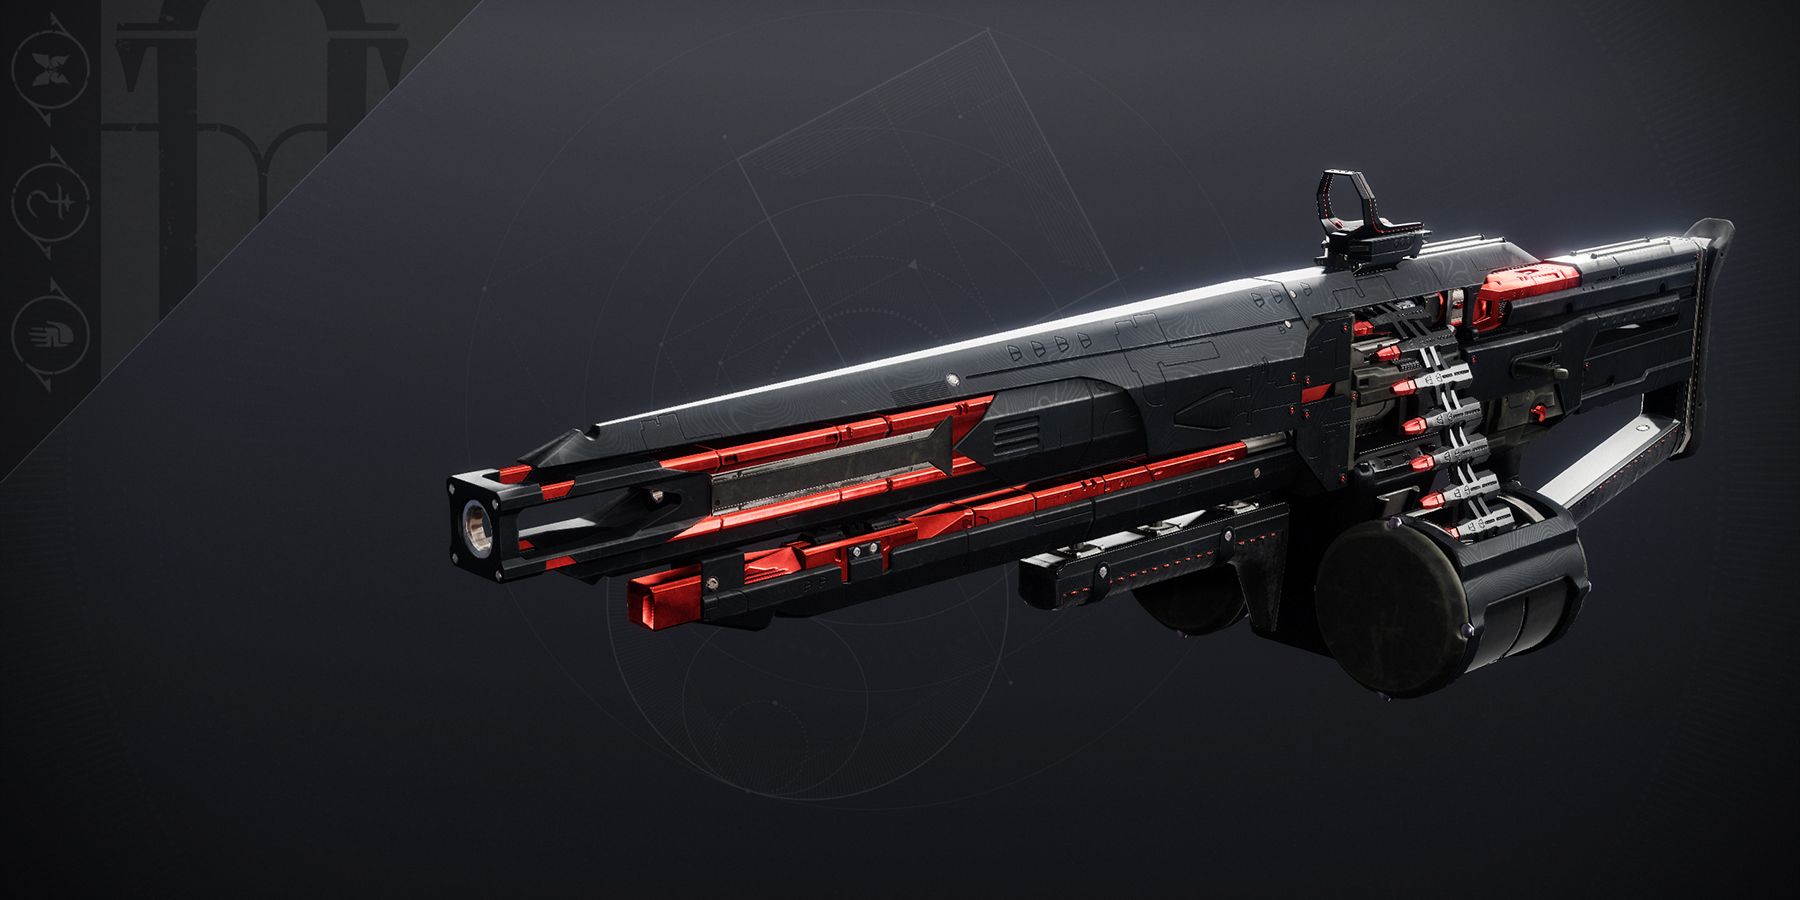 Hammerhead machine gun from Destiny 2